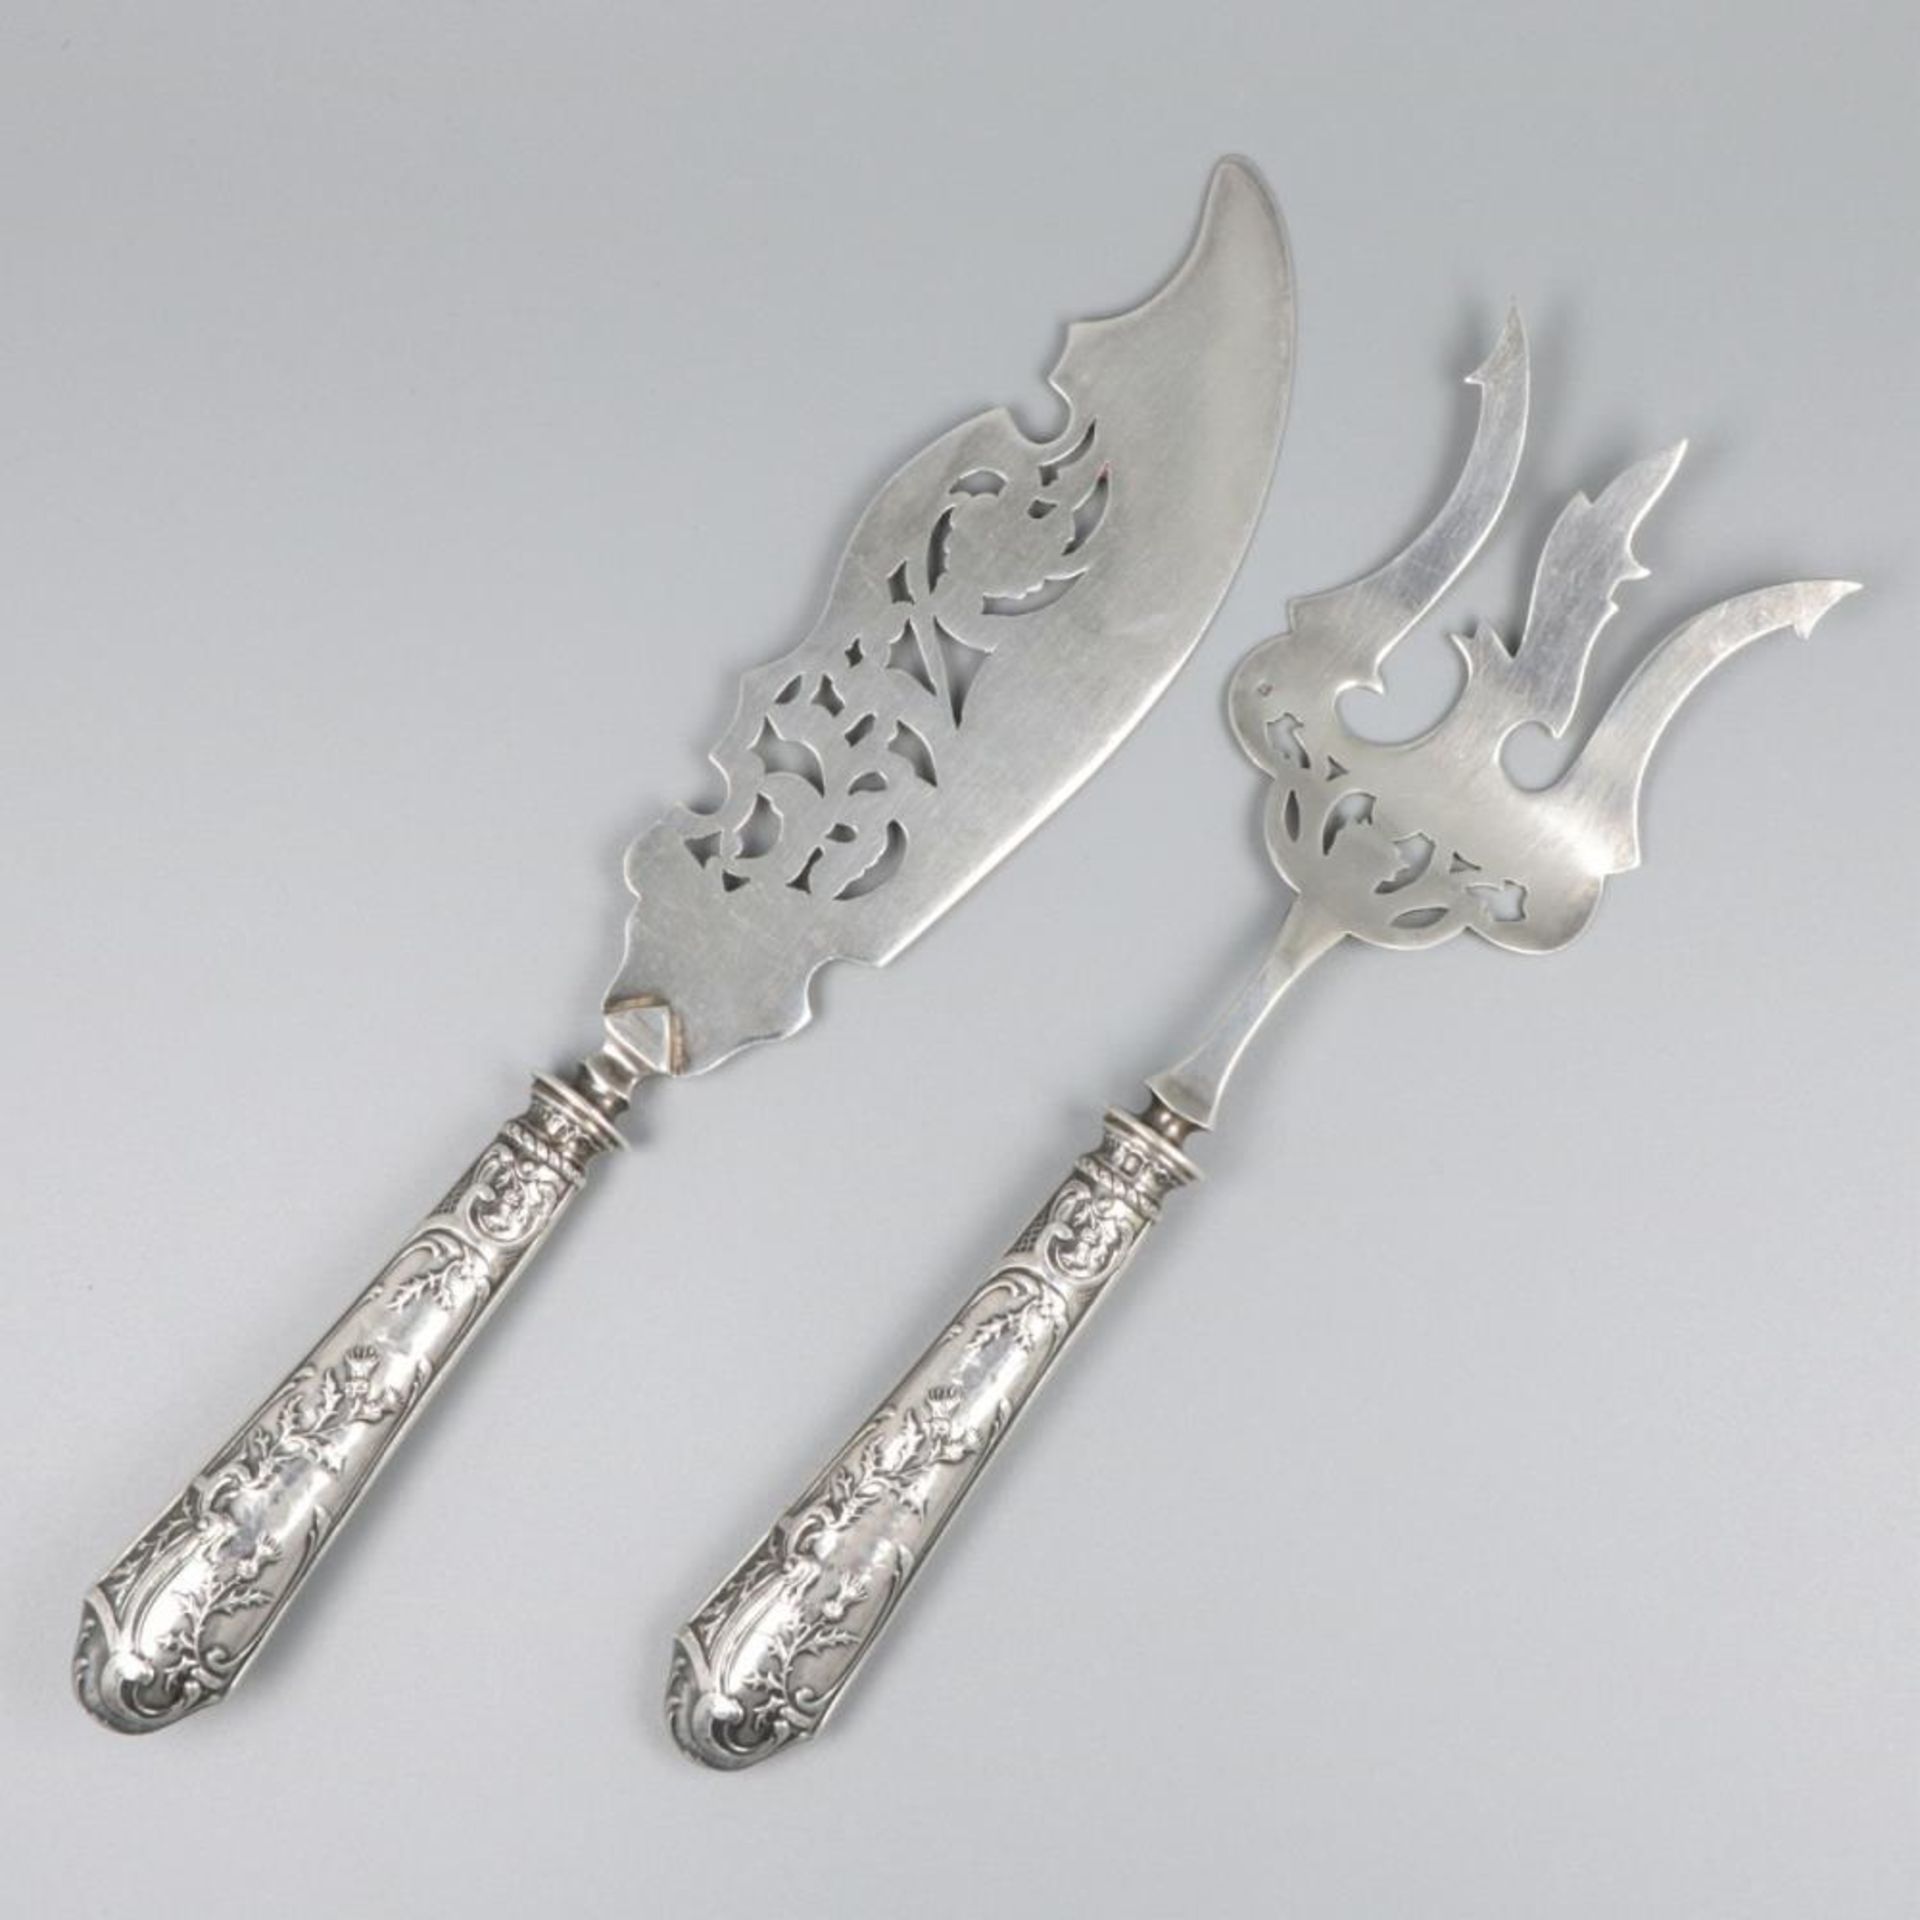 2-piece fish cutlery silver.